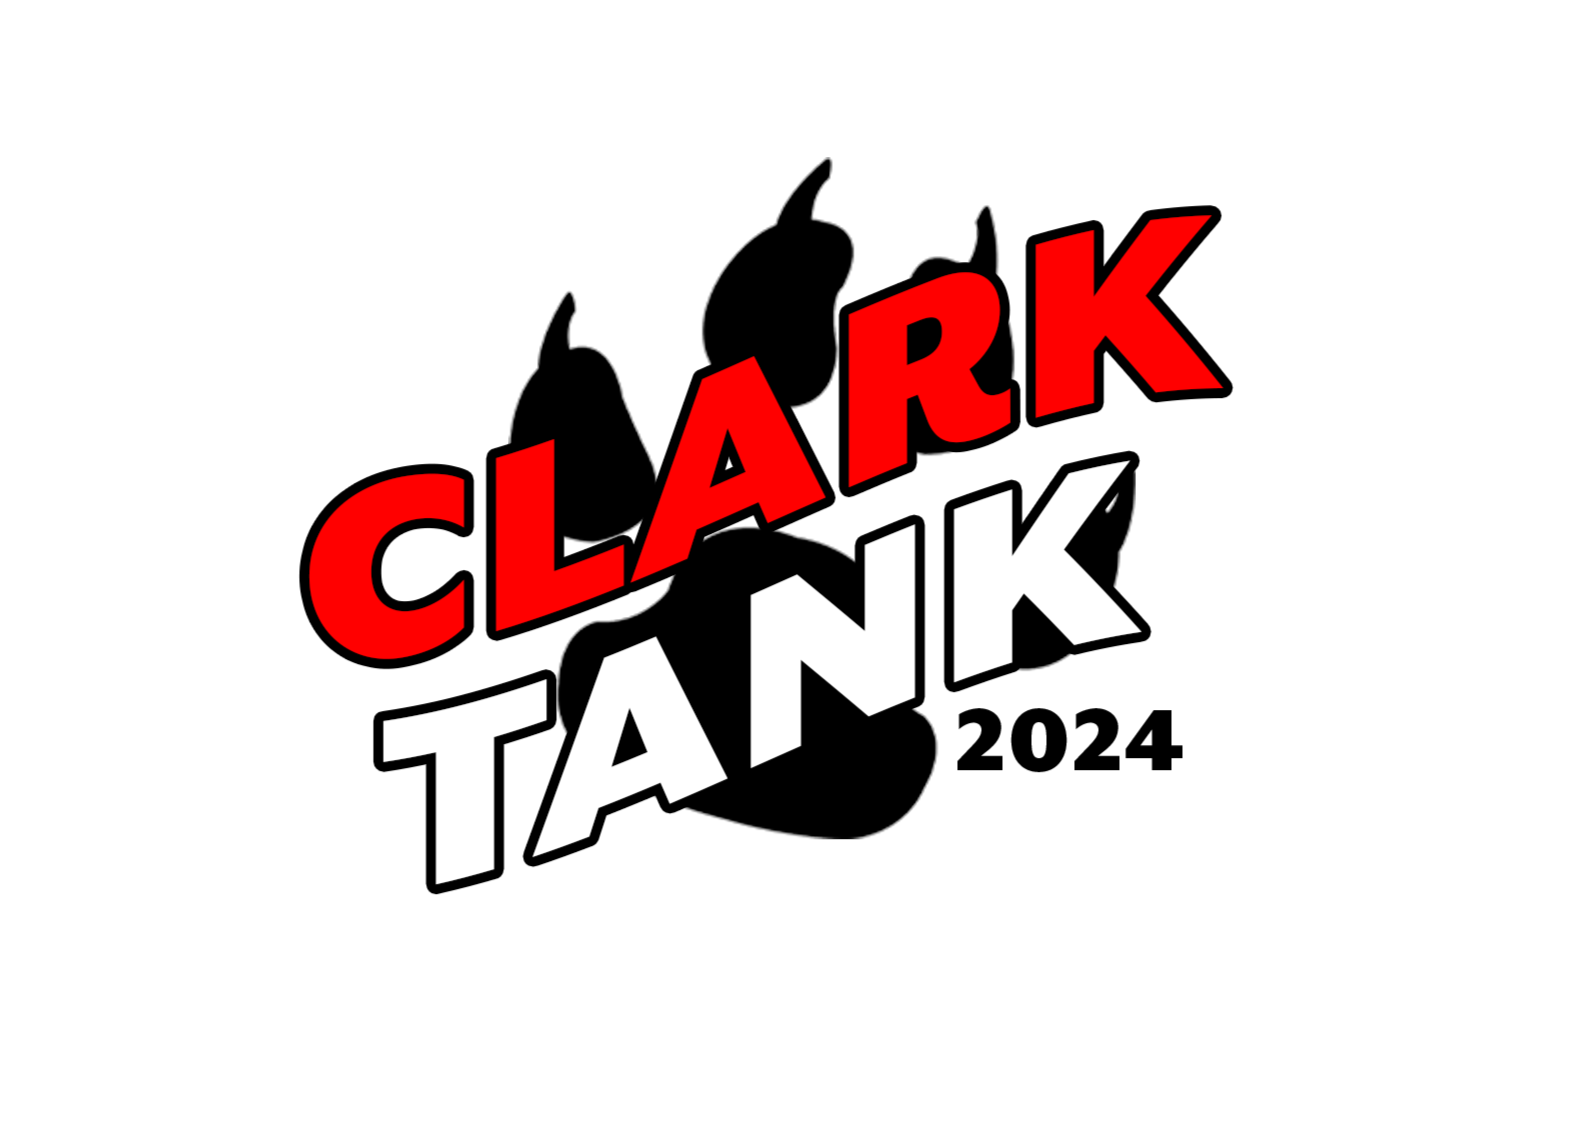 Clark tank 24 logo